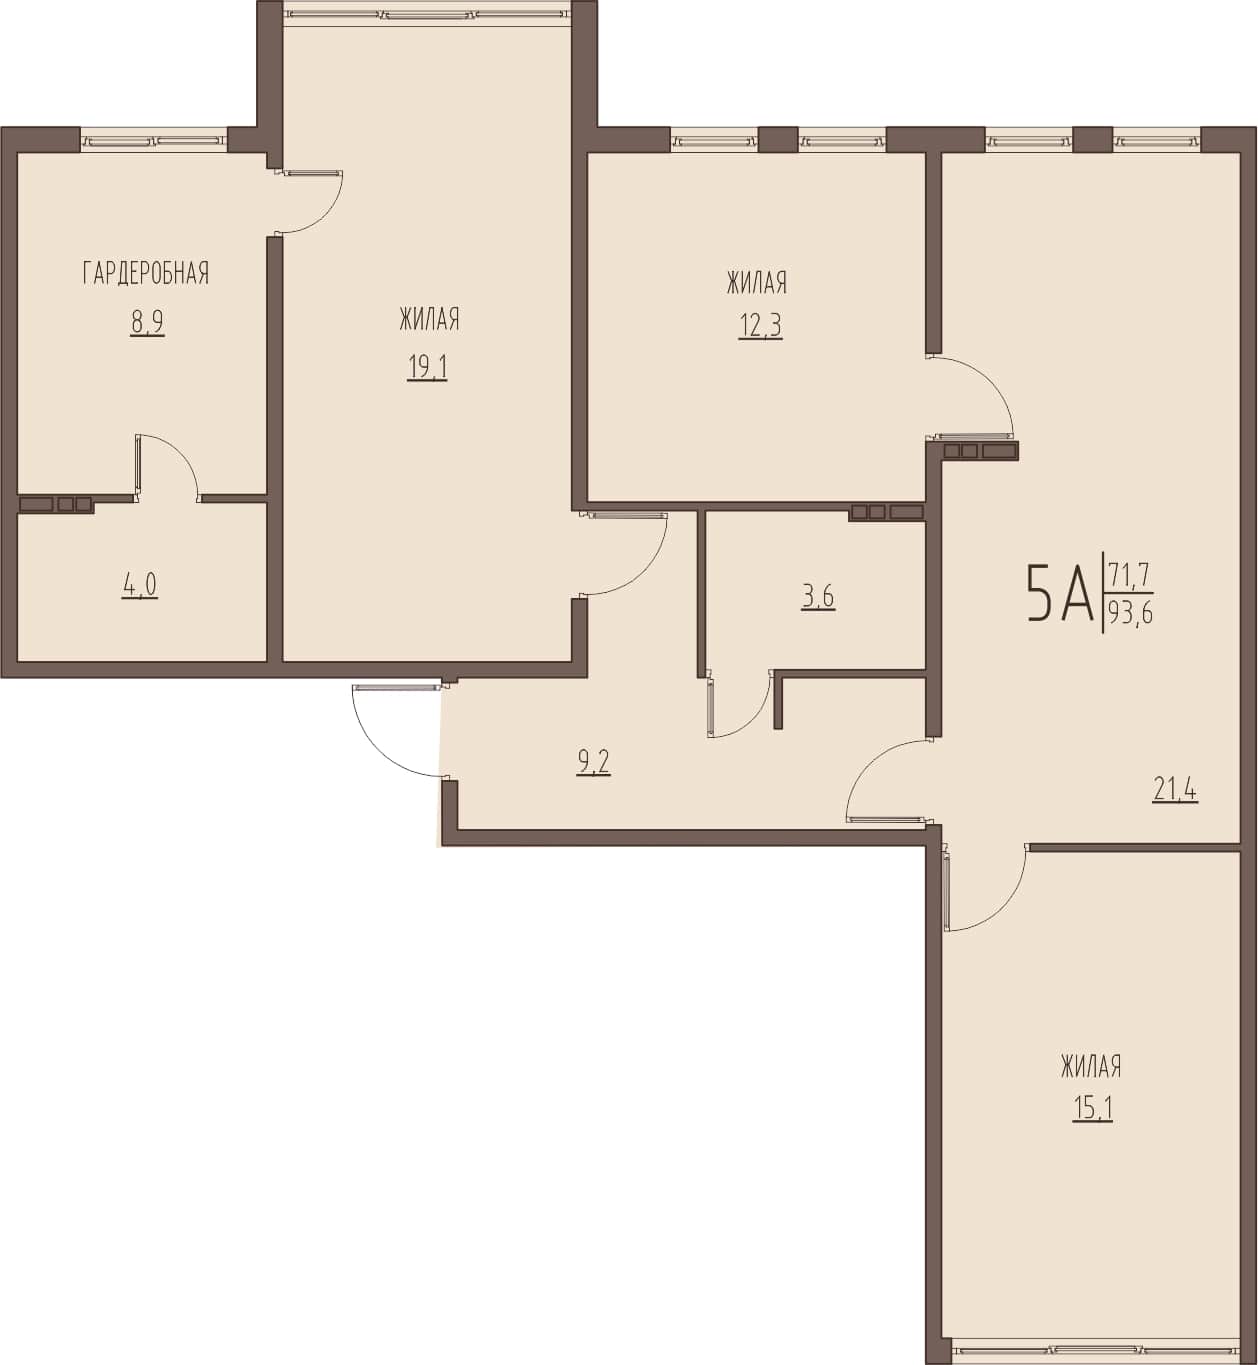 Просторная 4-комнатная квартира 93,6 м² с гардеробной